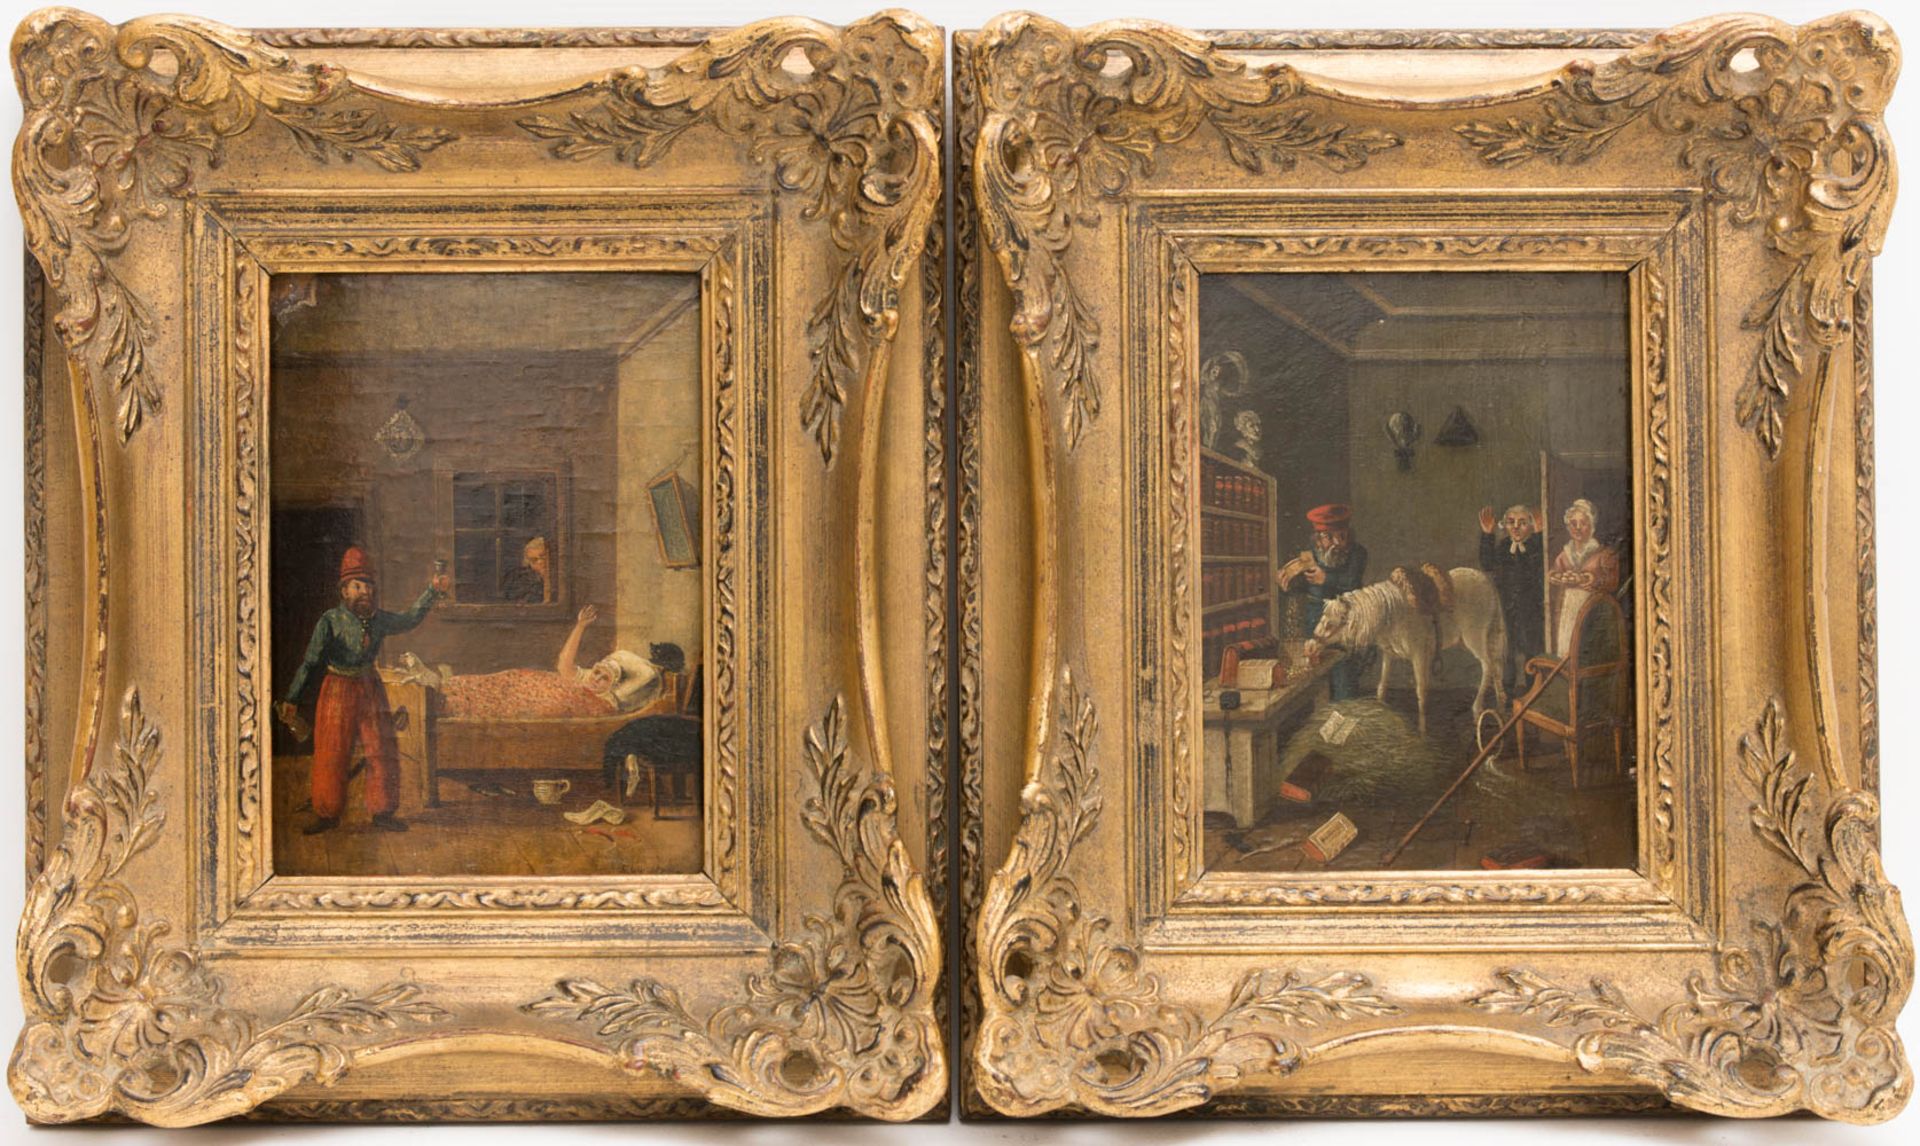 Ulbricht Johann Phillipp, Paar Humorvolle Szenen, Öl auf Holz, Mitte 18. Jh.